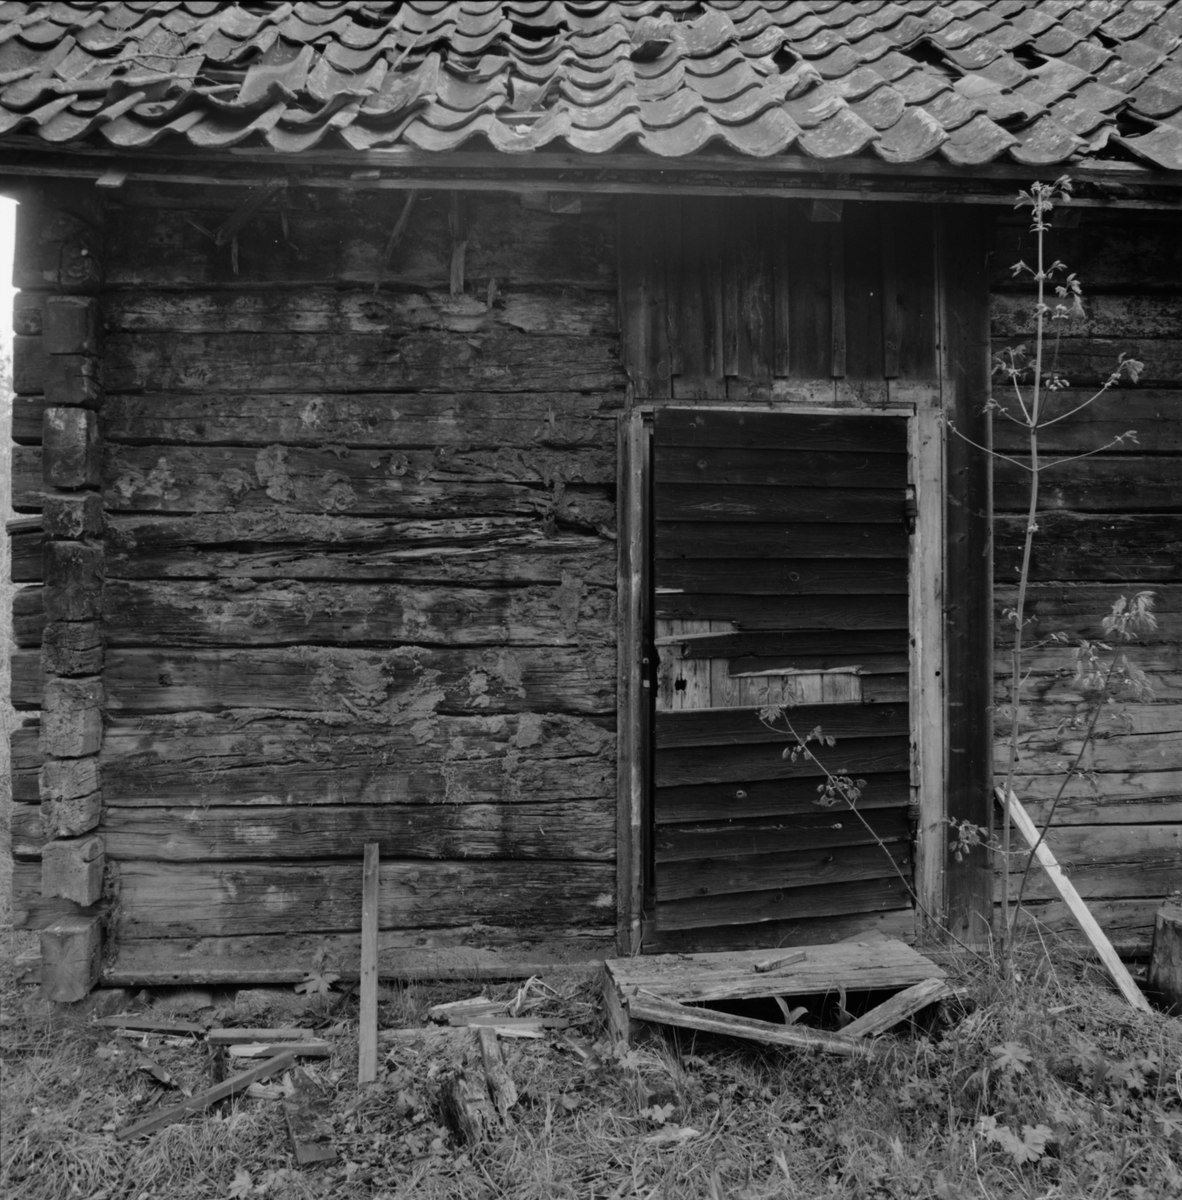 Timrad gruvstuga från senare delen av 1800-talet intill Konstängsgruvan, Dannemora Gruvor AB, Dannemora, Uppland maj 1991